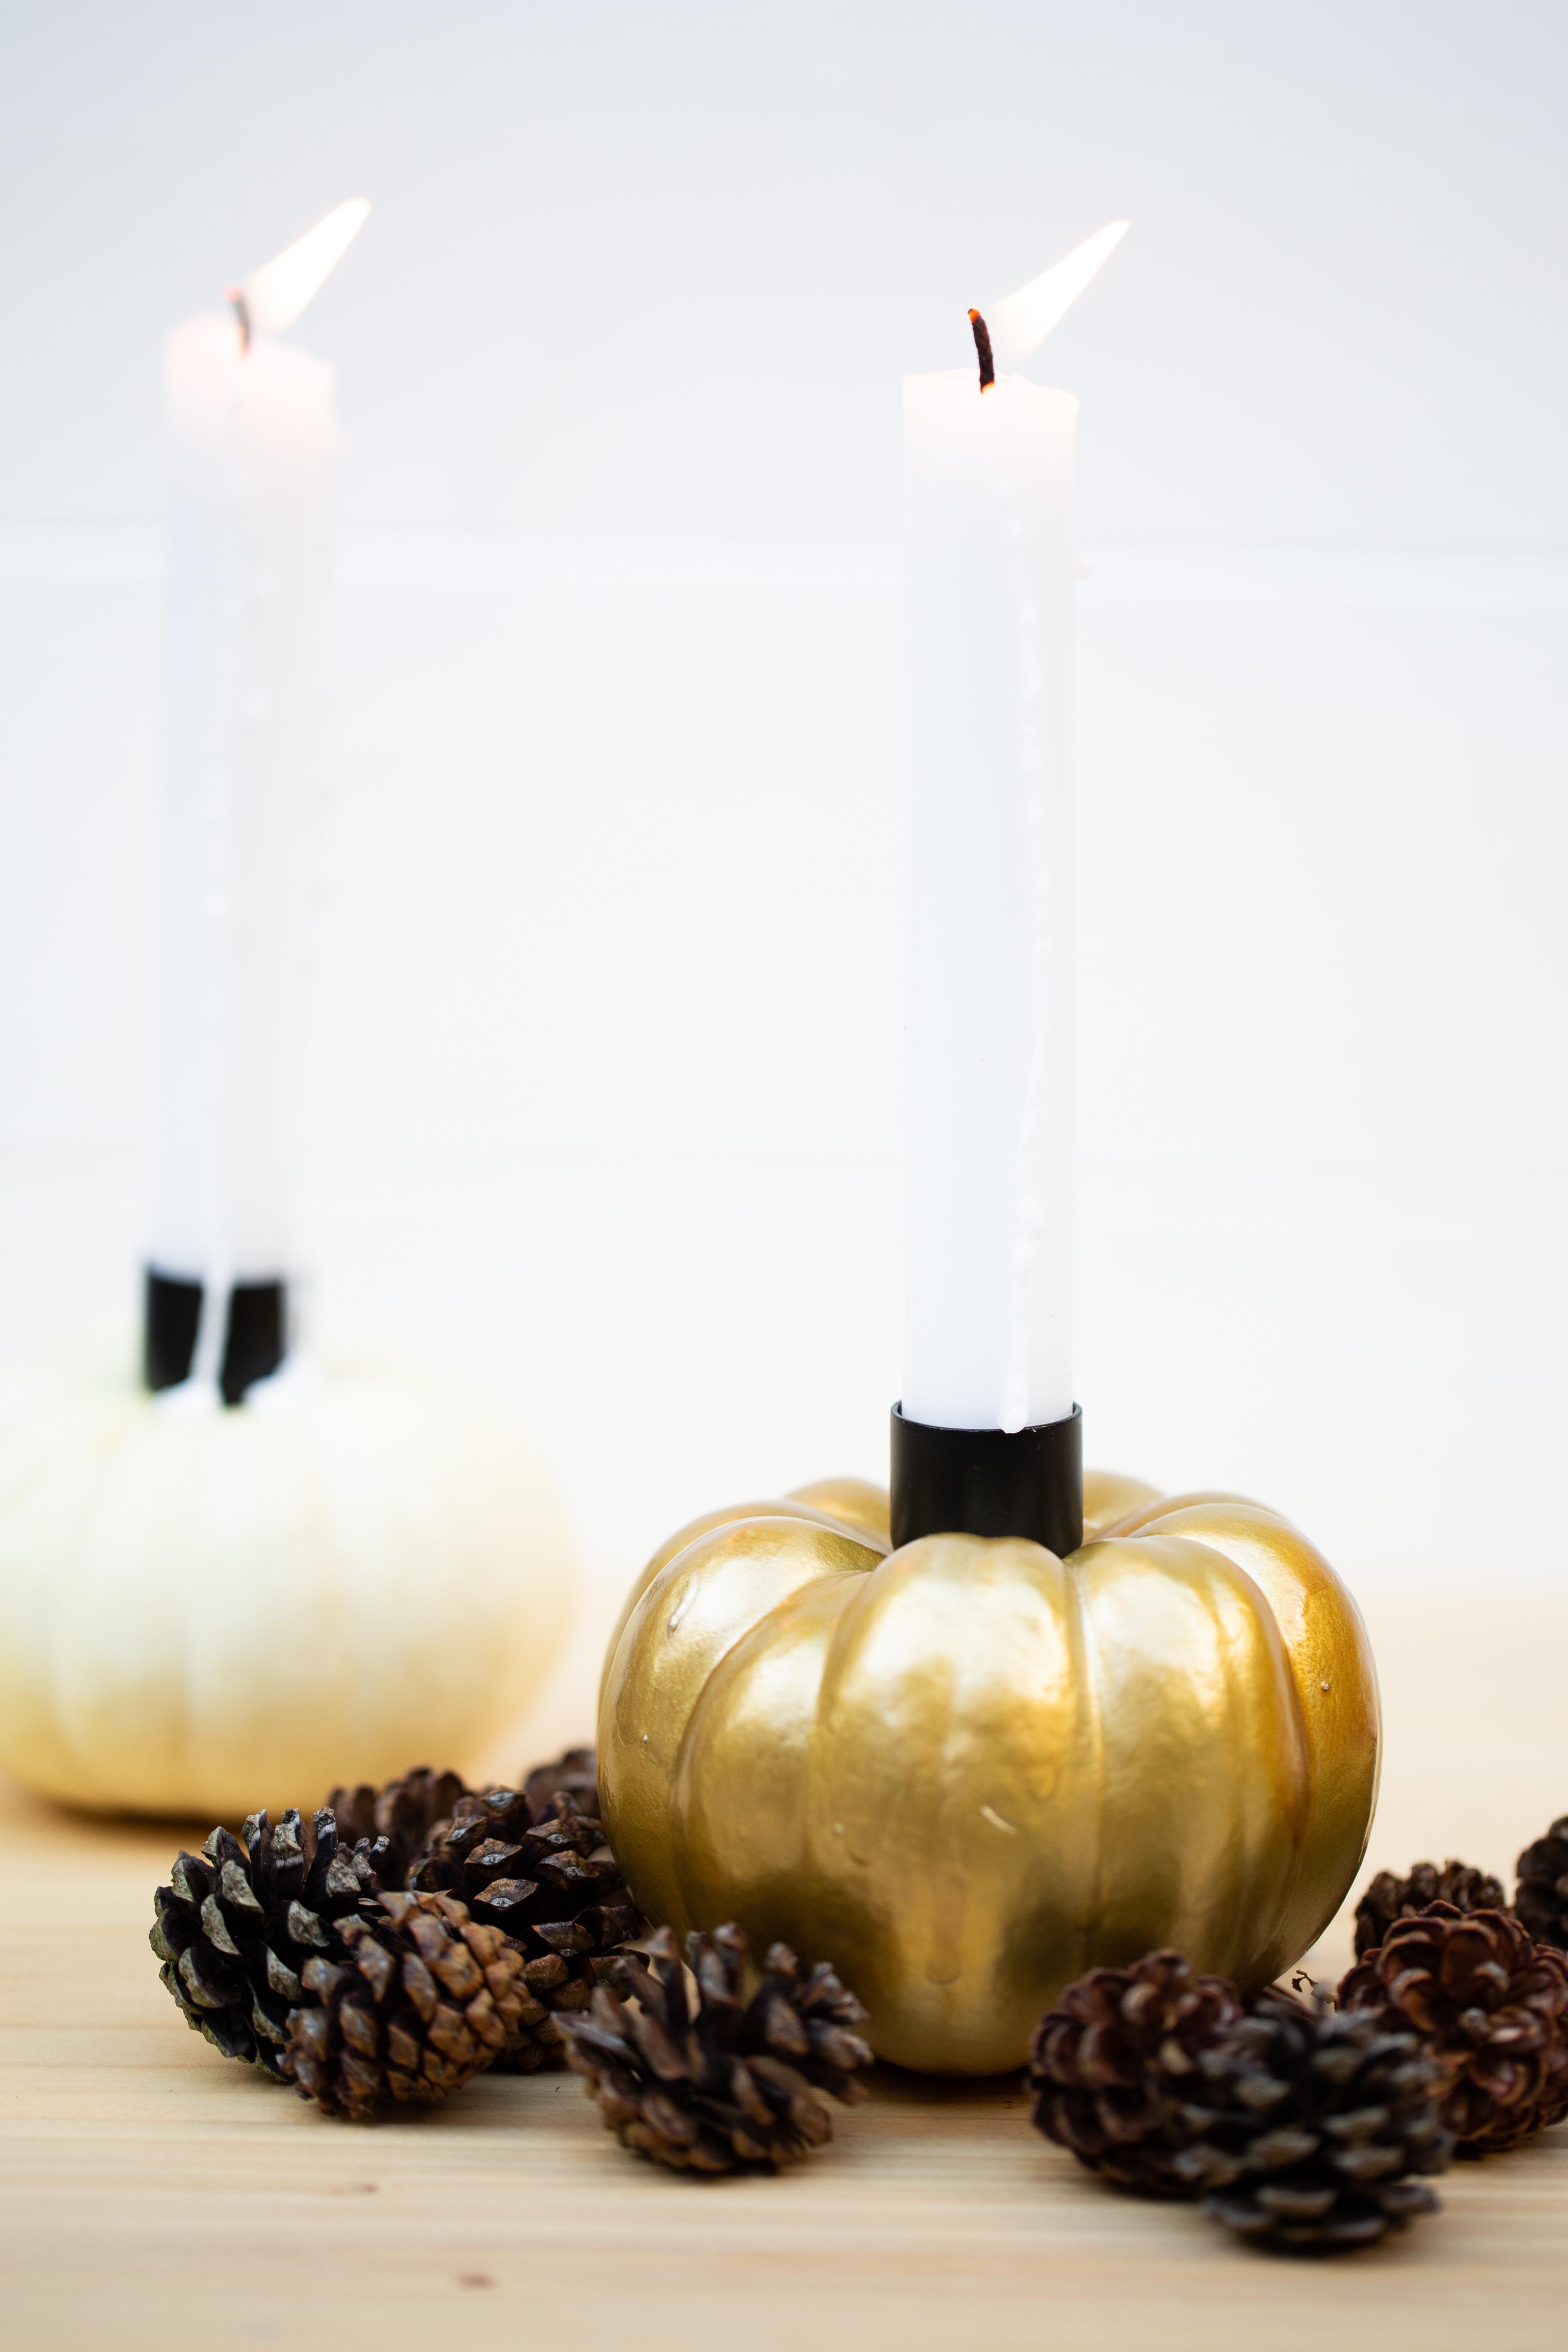 DIY Kürbis Kerzen selber machen - Herbstliche Tischdeko basteln

#wiebkeliebtDIY#kürbisdiy